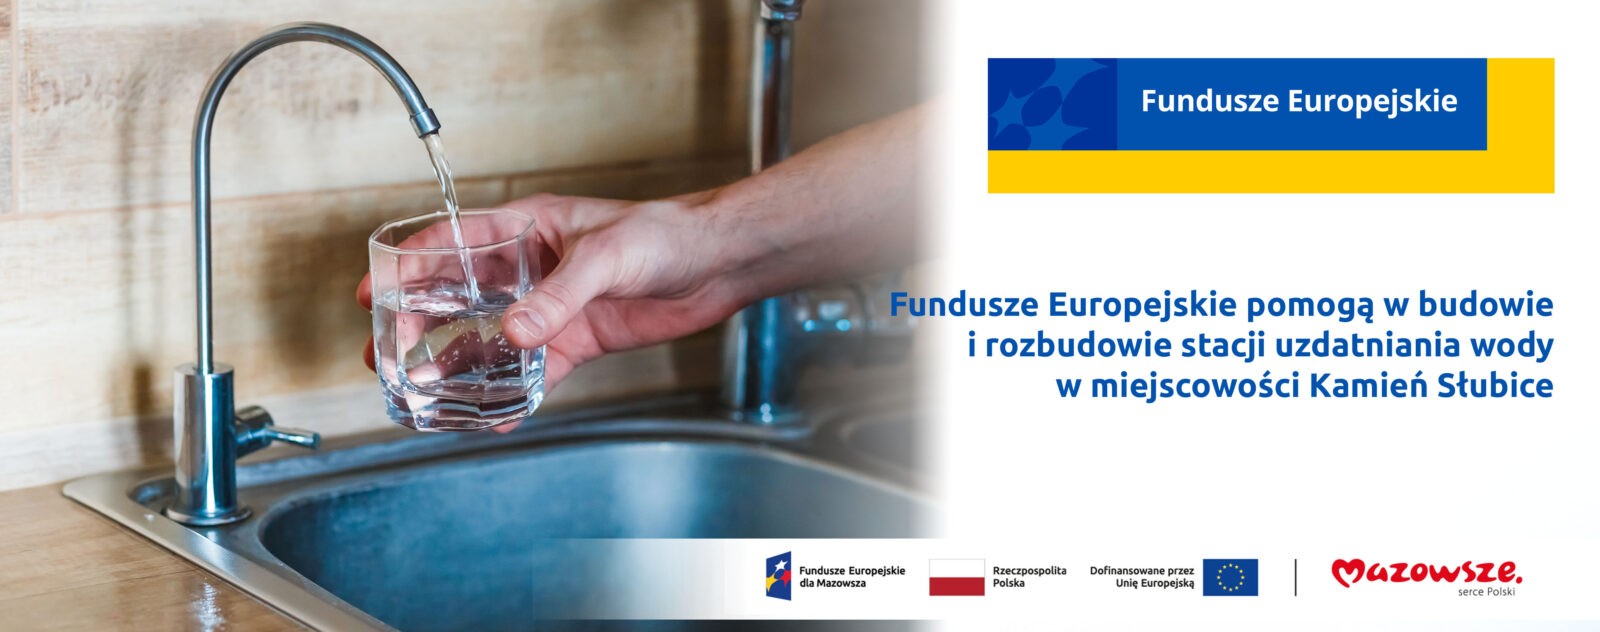 Grafika przedstawia napis Fundusze Europejskie pomogą w budowie i rozbudowie stacji uzdatniania wody w miejscowości Kamień Słubice. Z lewej strony widać zlew, kran i rękę nalewającą wodę z kranu do szklanki.